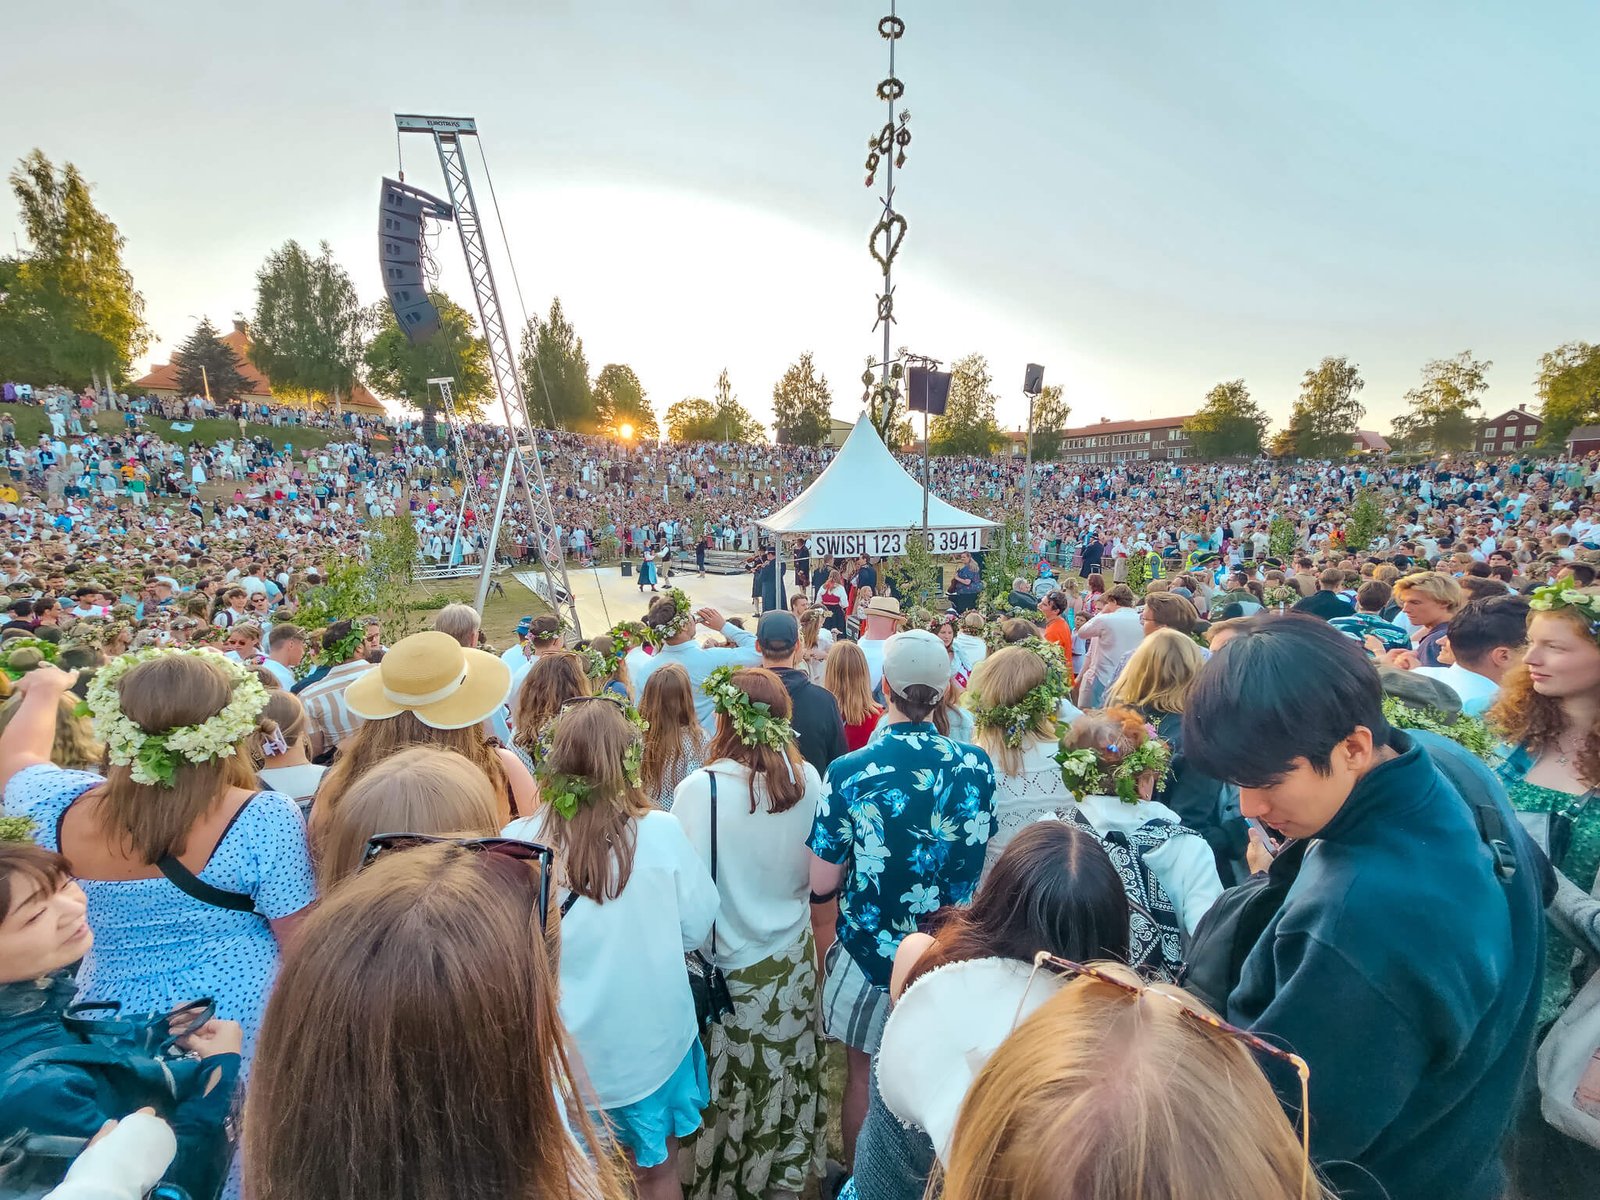 Midsummer celebrated in Sweden (Dalarna)